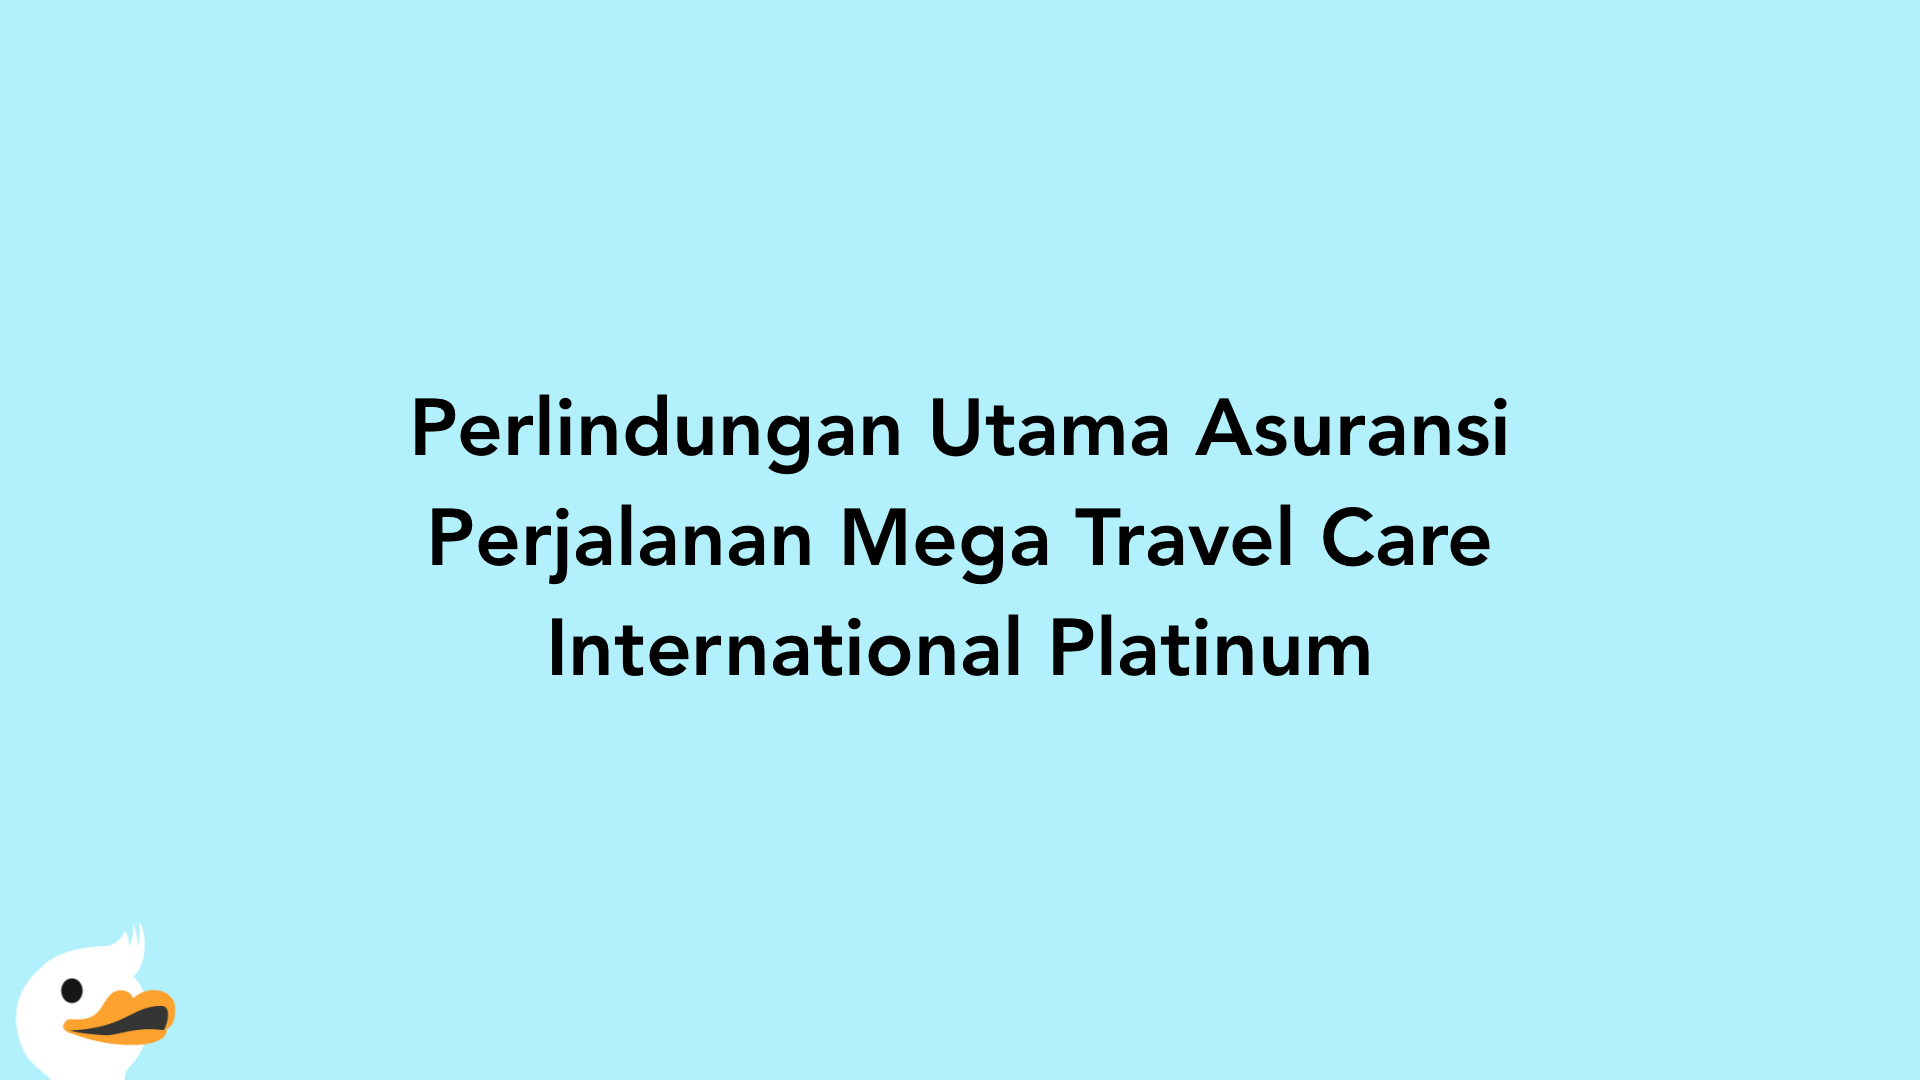 Perlindungan Utama Asuransi Perjalanan Mega Travel Care International Platinum